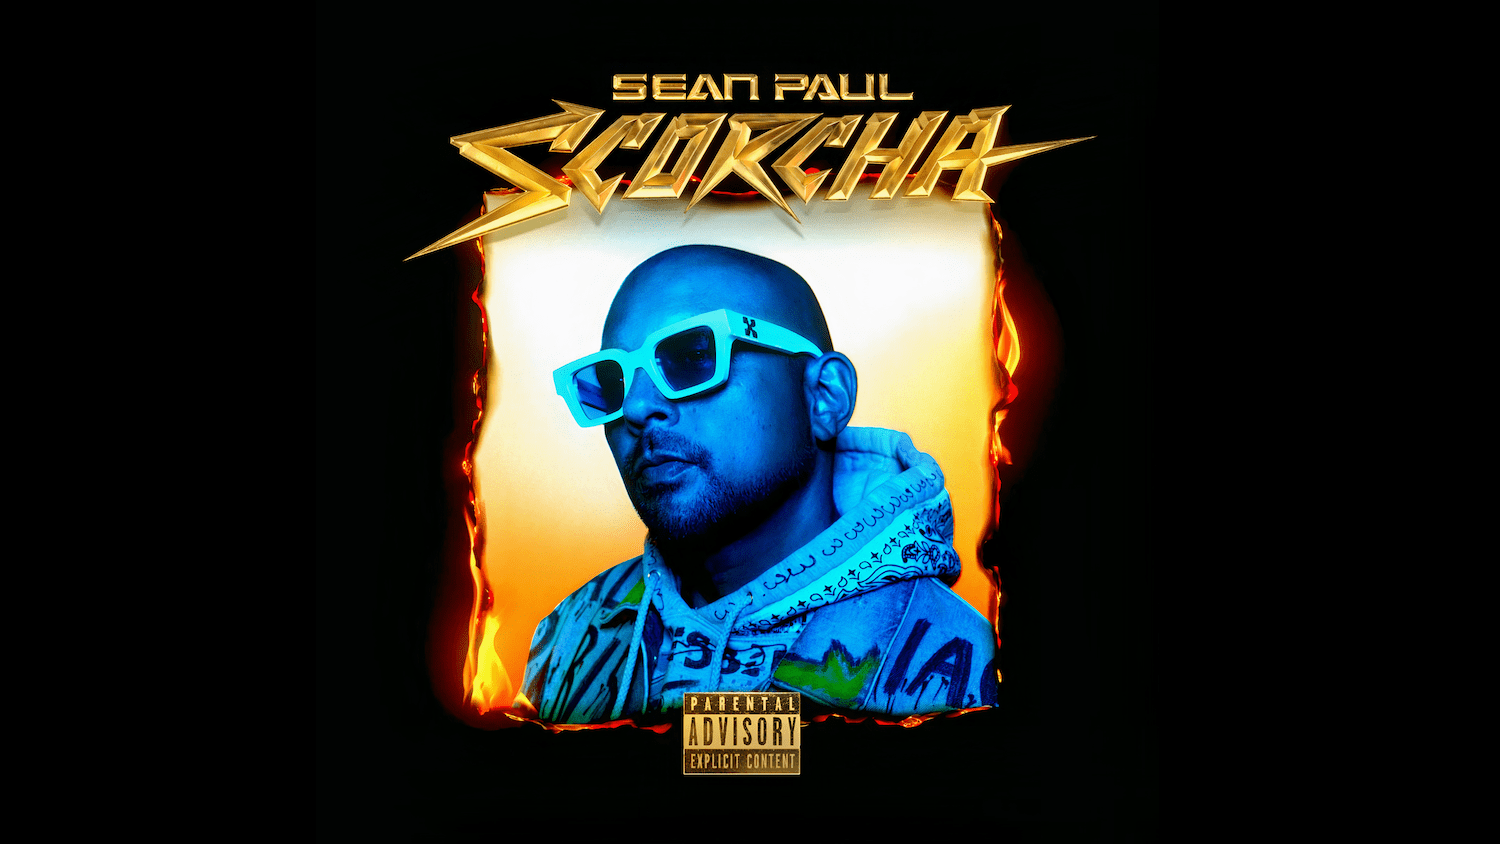 Sean Paul Announces New Album Scorcha